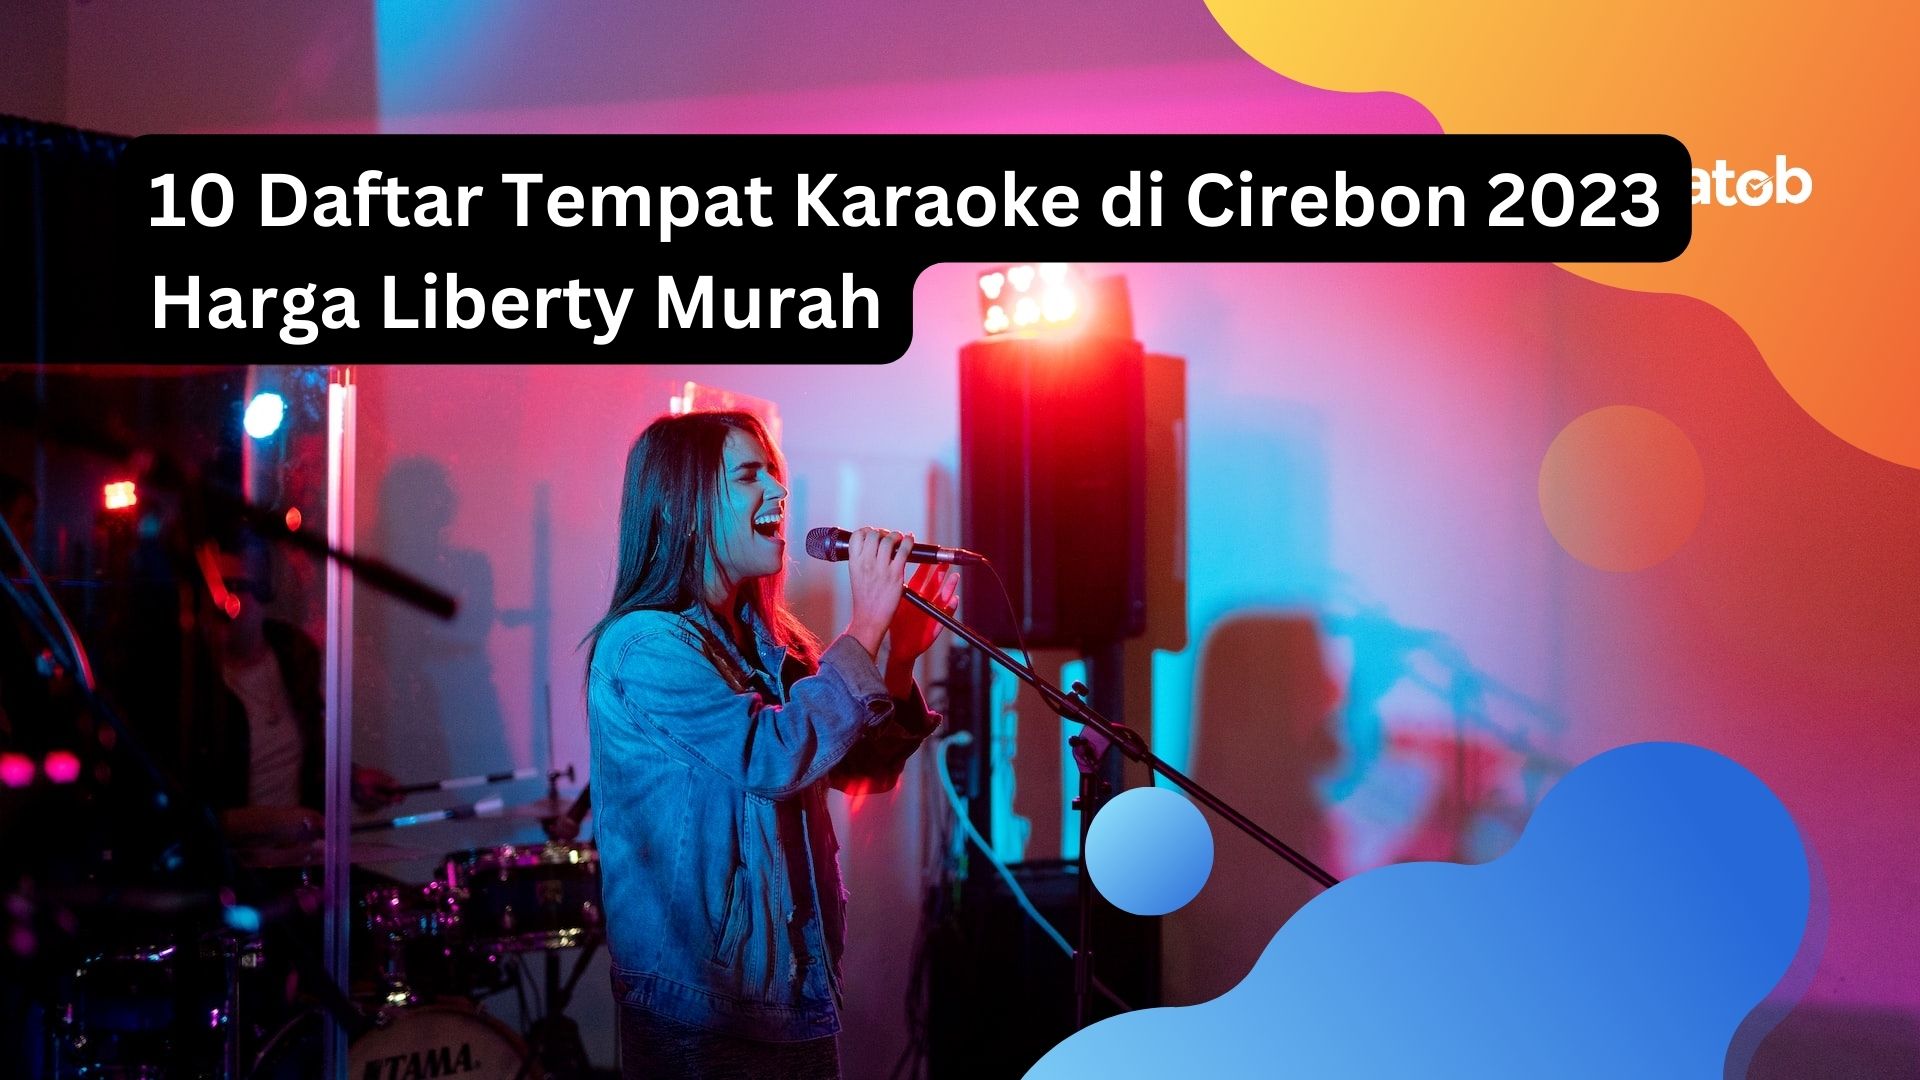 10 Daftar Tempat Karaoke di Cirebon 2023 Harga Liberty Murah